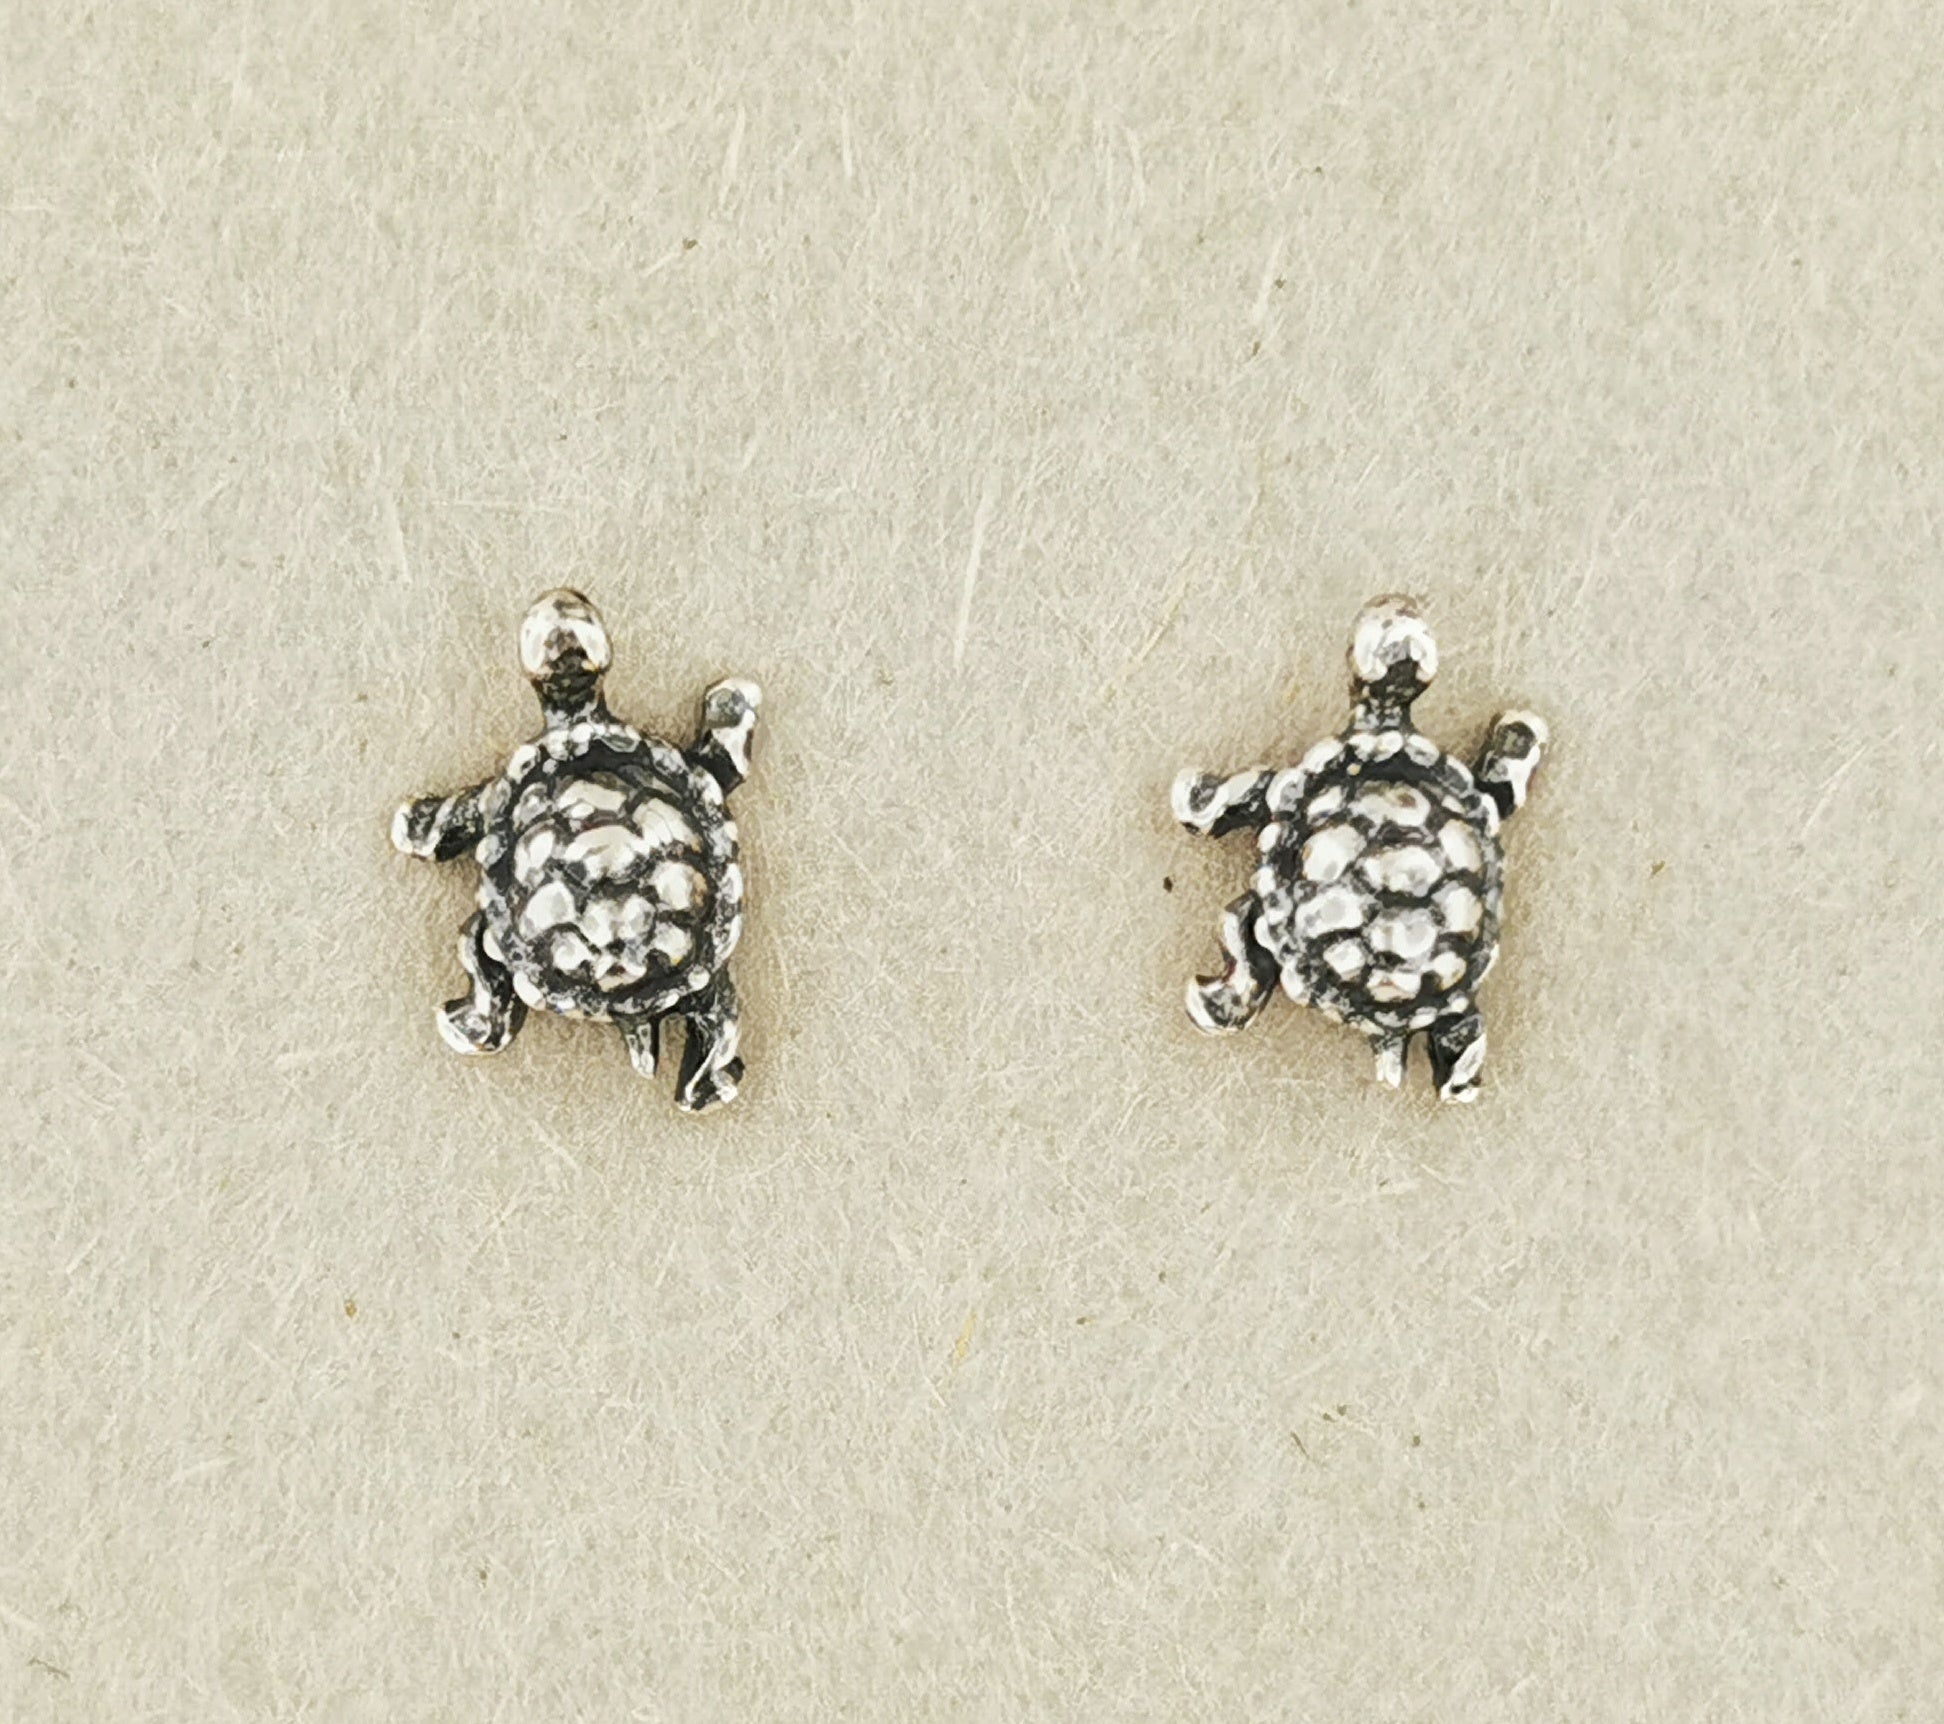 Turtle Earrings in 925 Sterling Silver, Small Turtle Earrings, Tiny Turtle Stud Earrings, Small Animal Stud Earrings for Girls, Turtle Lover Gift, Sterling Silver Stud Earrings, Silver Turtle Jewelry, Silver Turtle Jewellery, Silver Turtle Earrings